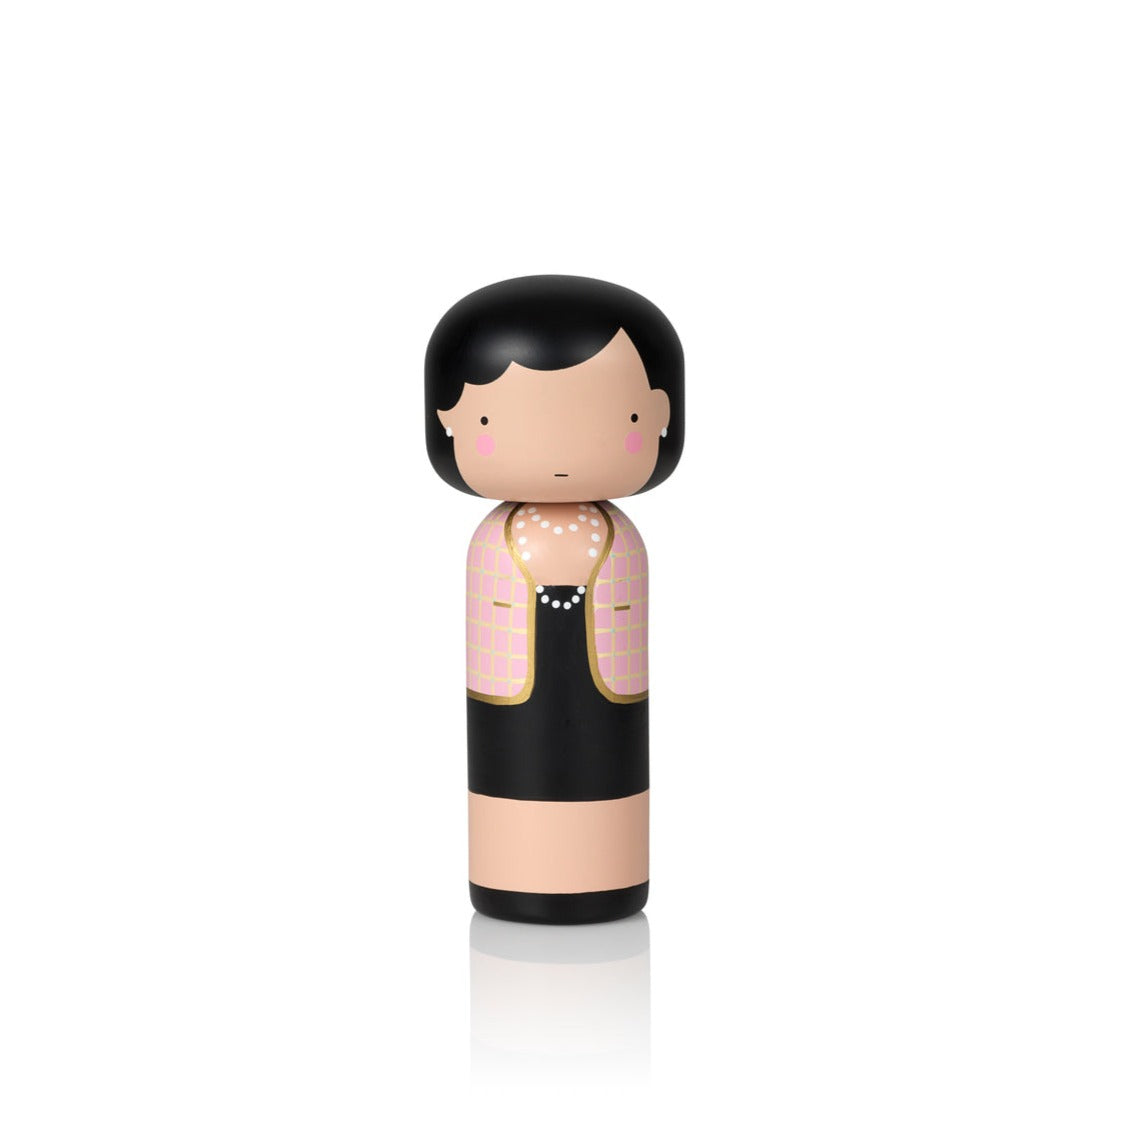 Figura de madera inspirada en Coco Chanel, collar de perlas y chaqueta rosa